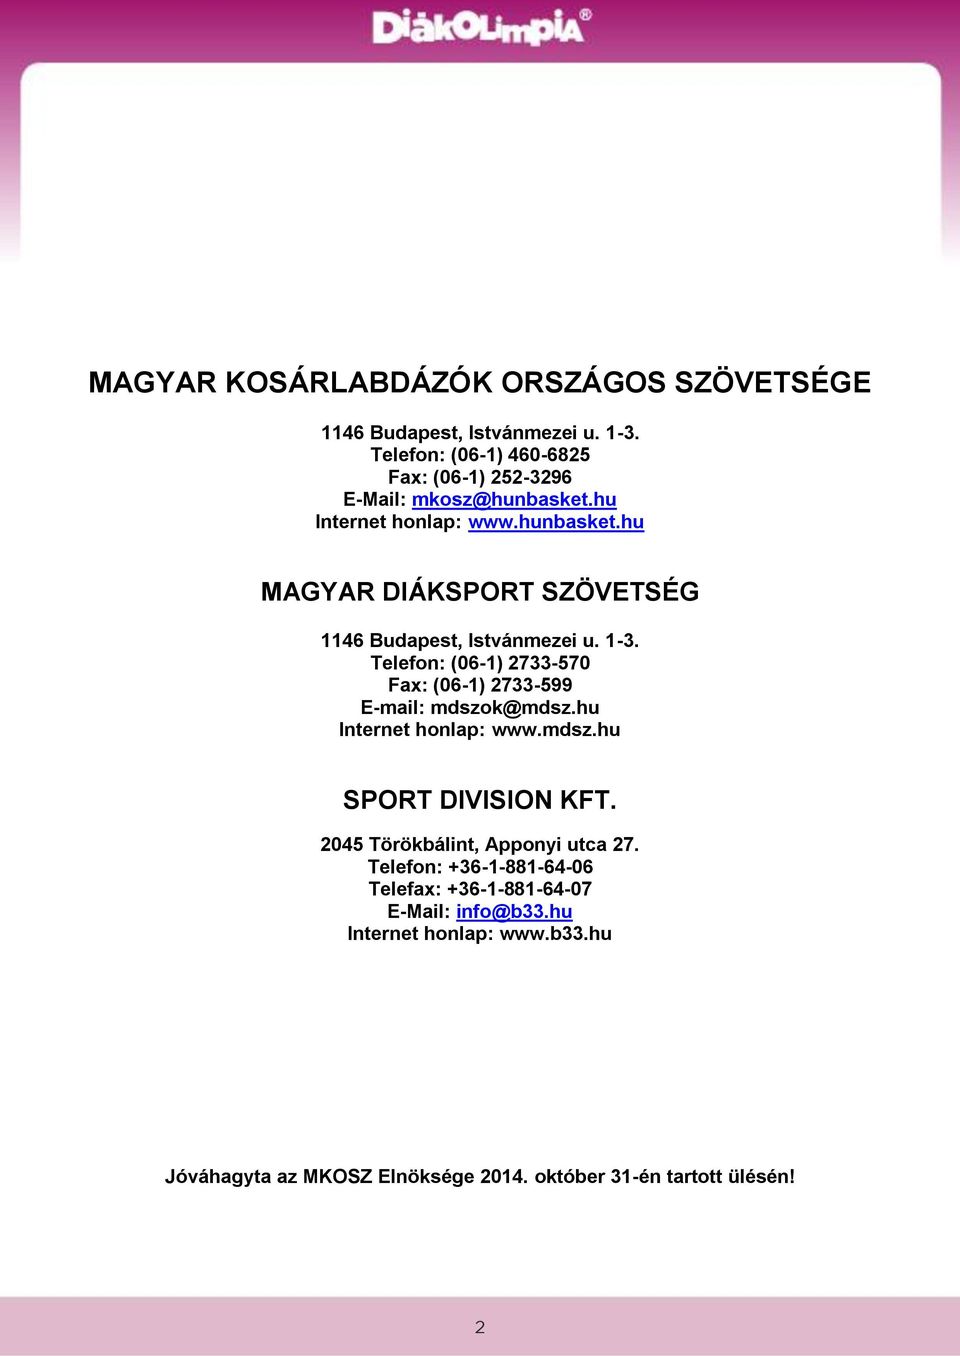 1-3. Telefon: (06-1) 2733-570 Fax: (06-1) 2733-599 E-mail: mdszok@mdsz.hu Internet honlap: www.mdsz.hu SPORT DIVISION KFT.